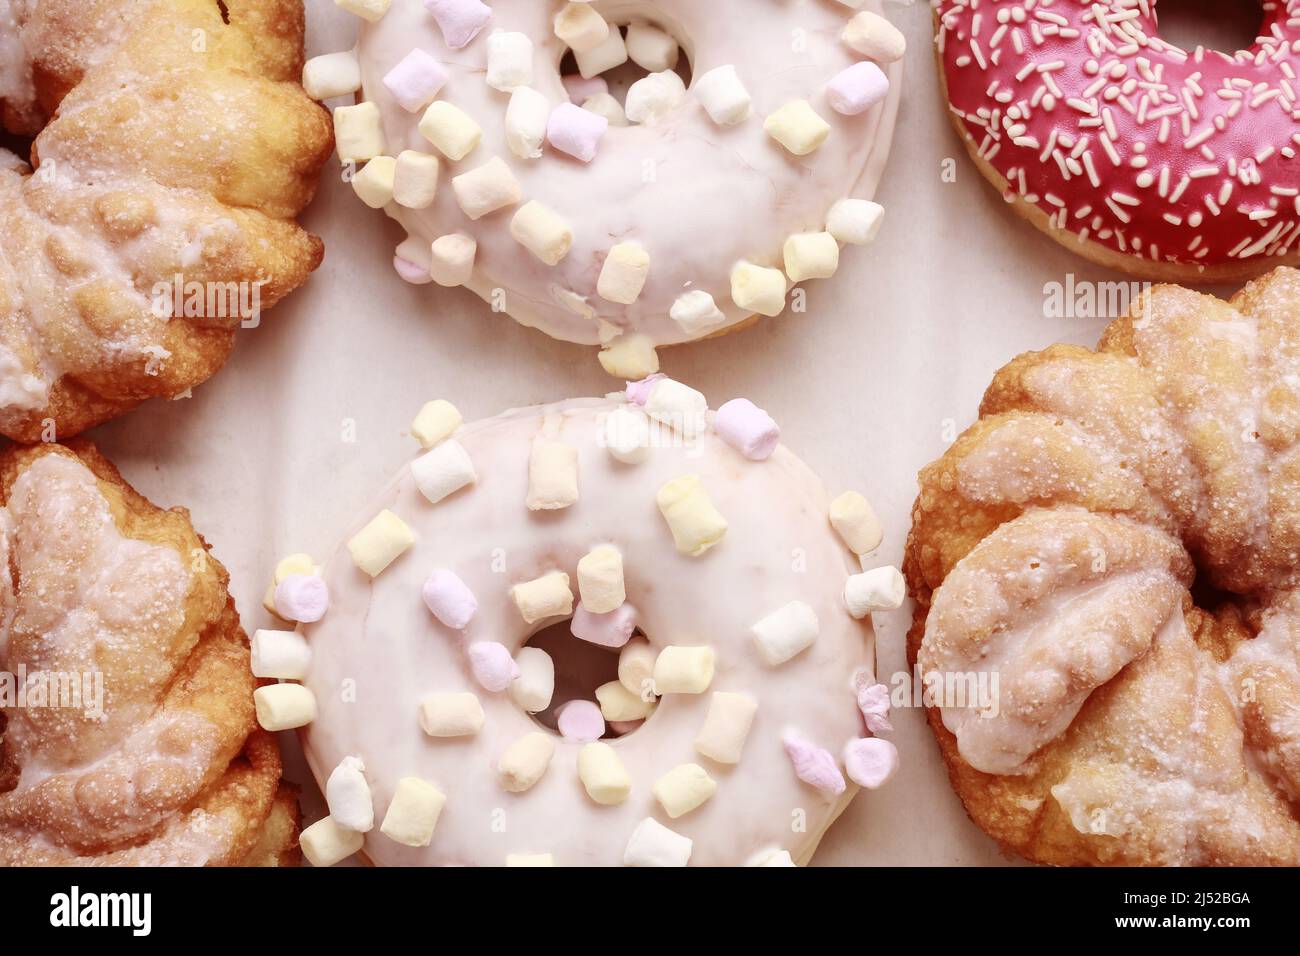 Varios tipos de donuts sobre fondo rosa. Postre de fiesta Foto de stock